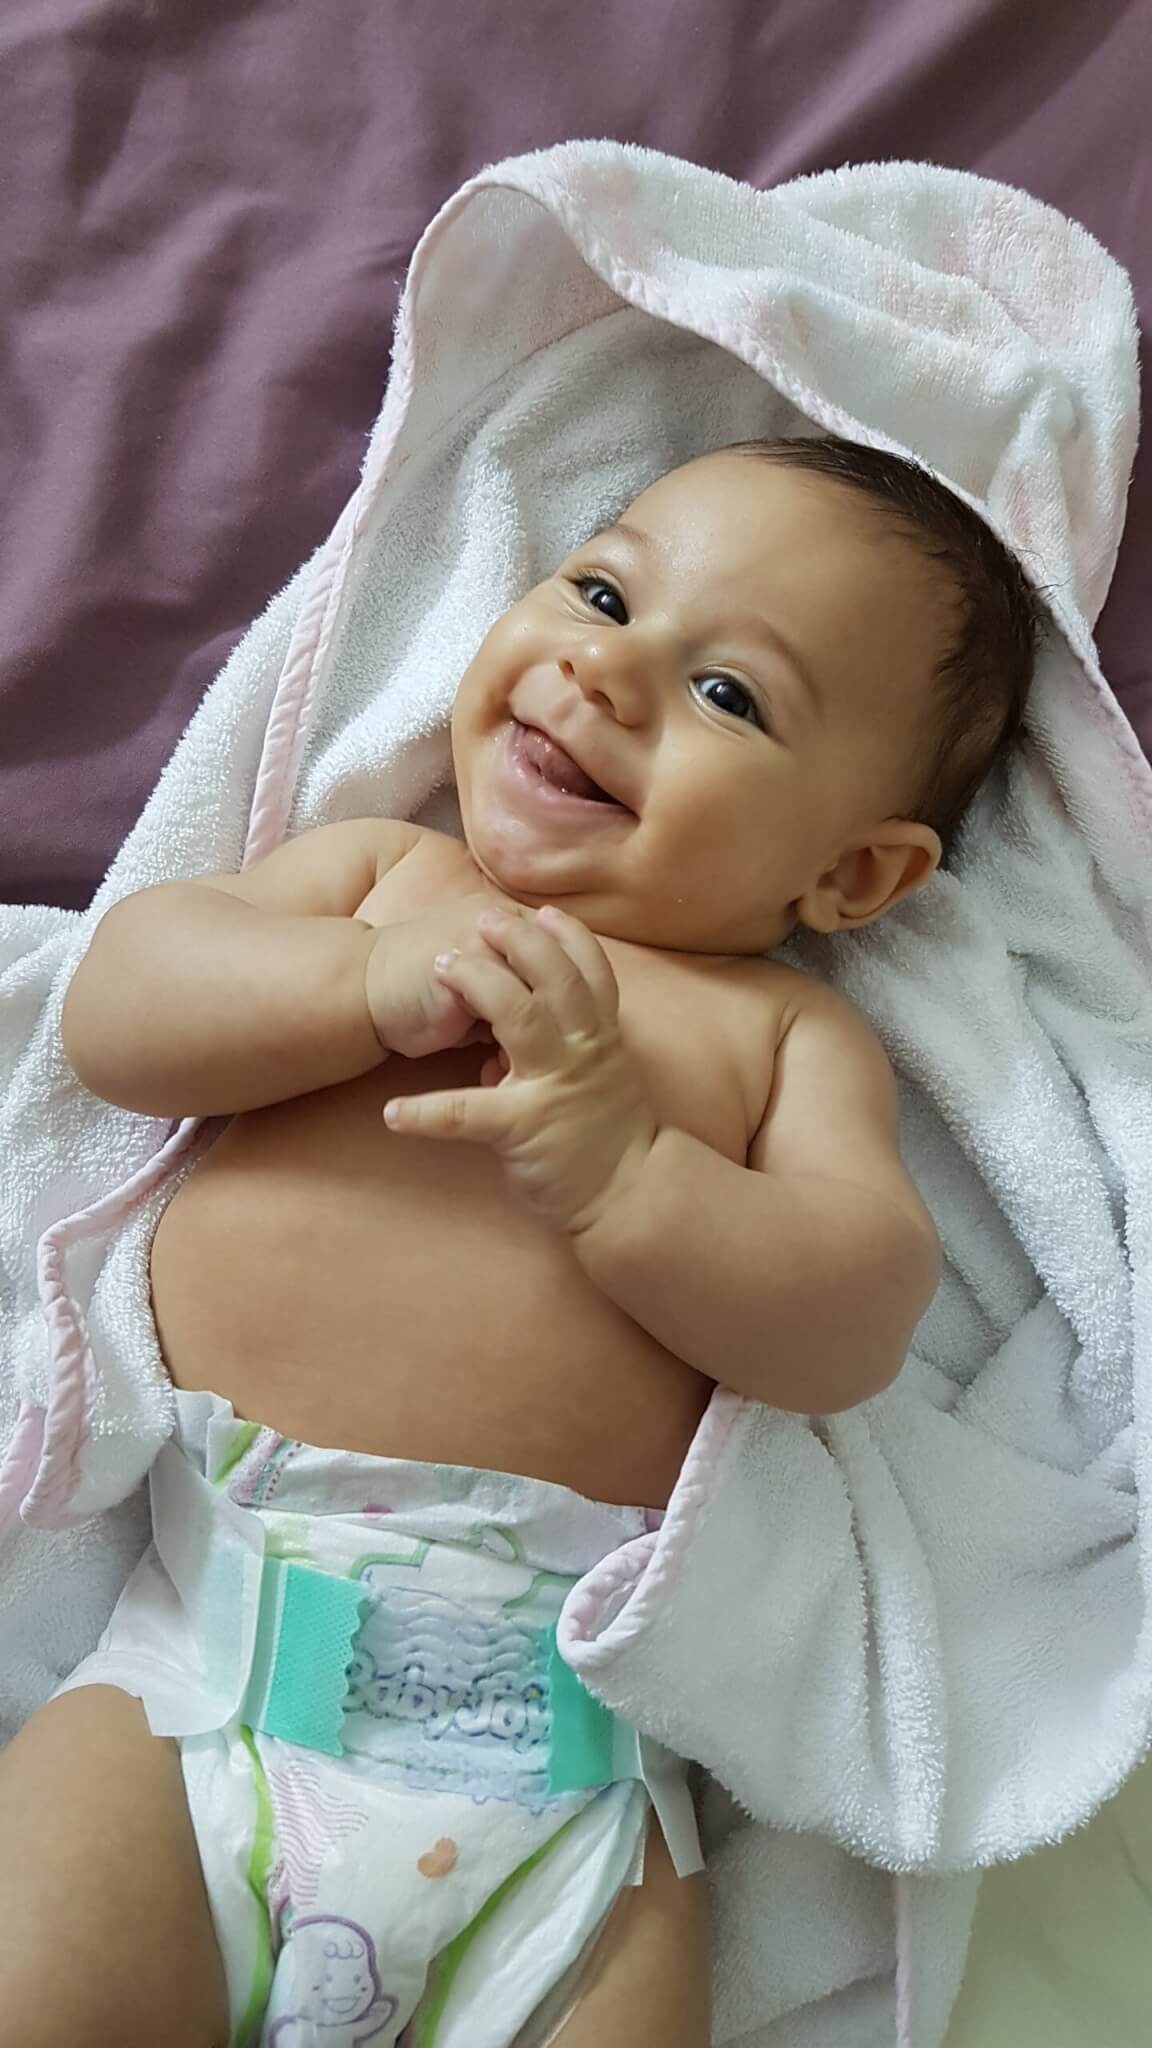 A happy baby